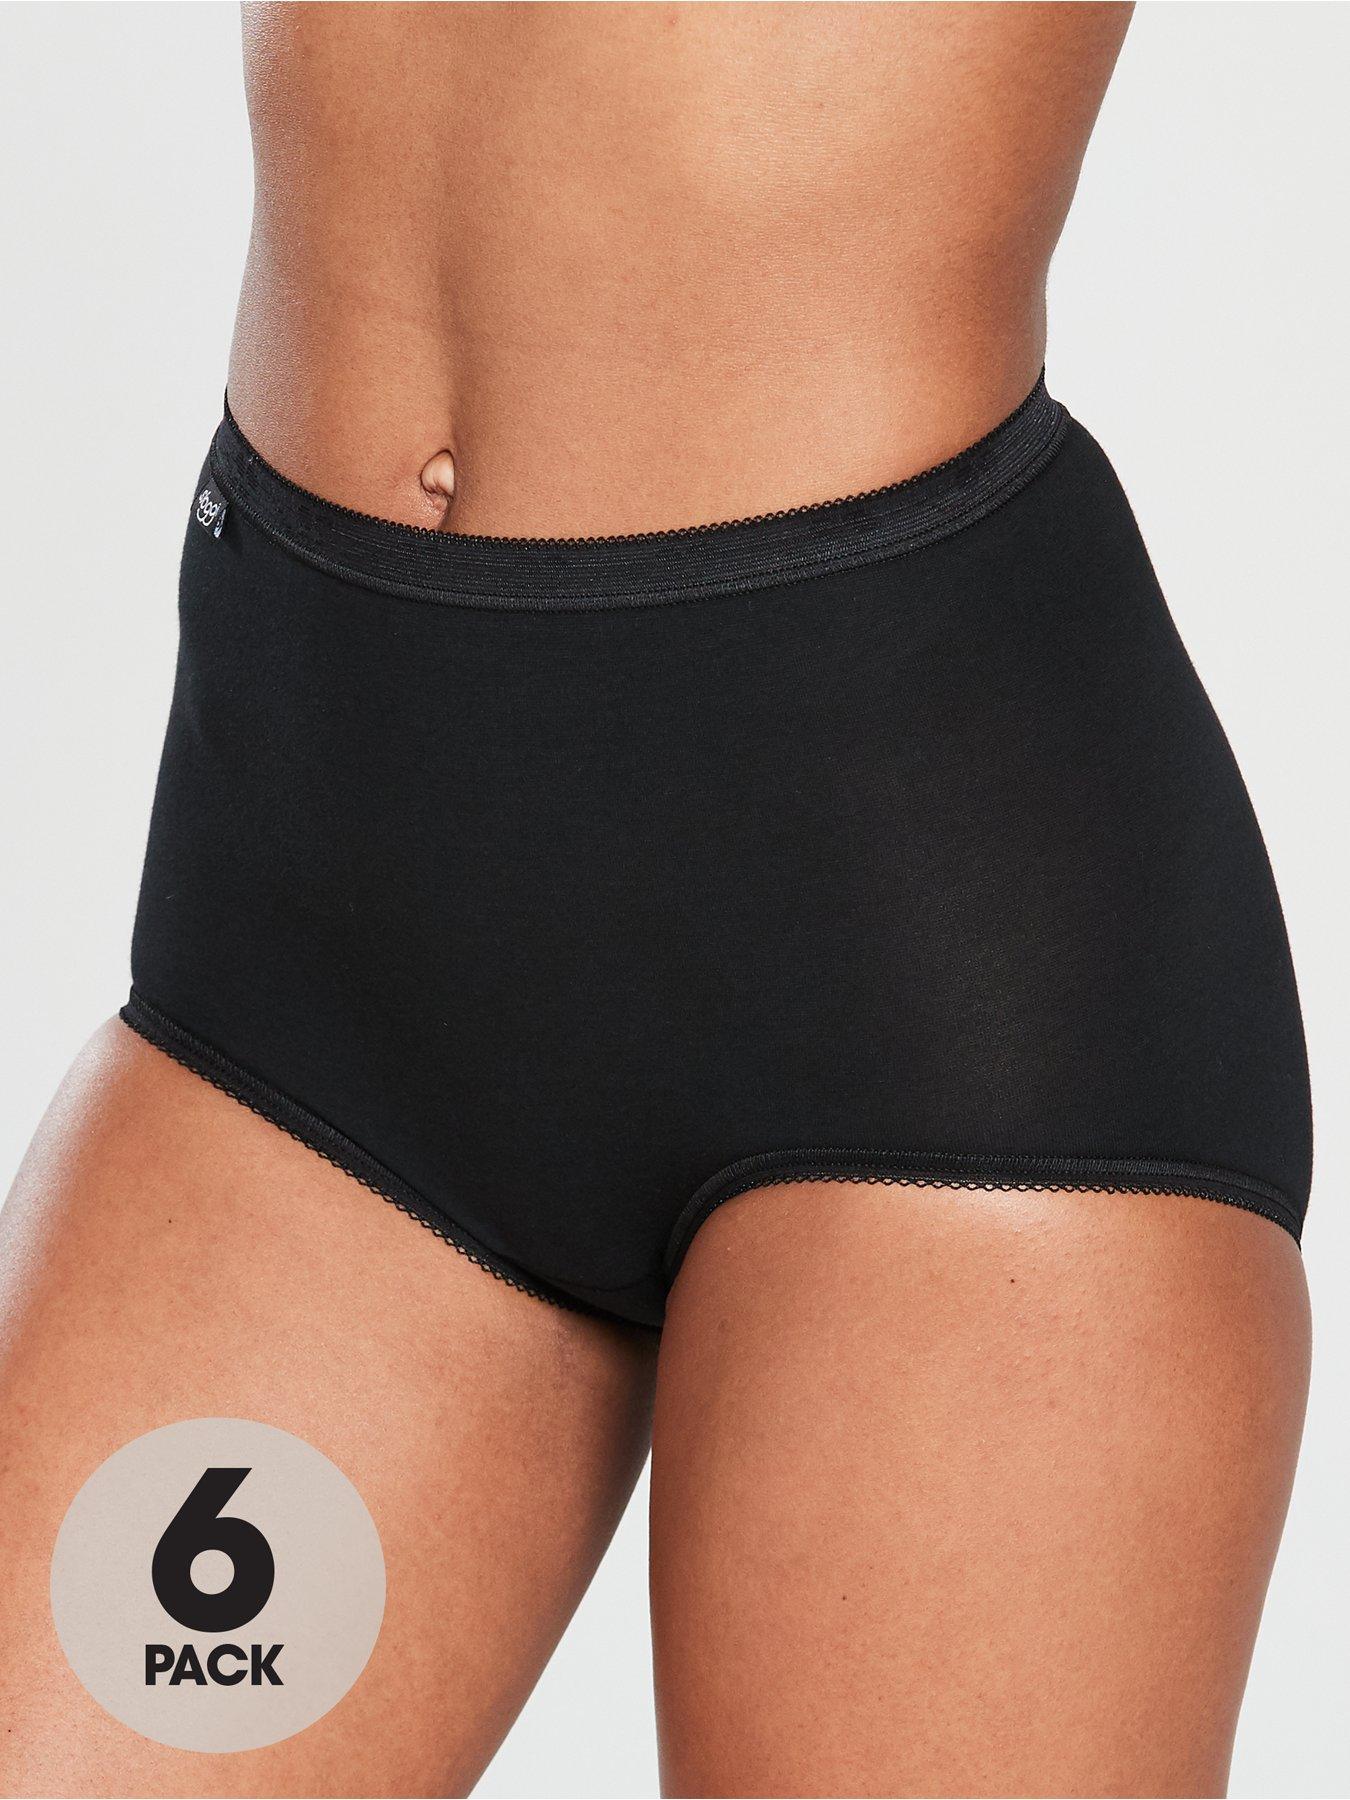 Vintage Brand New Beige Sloggi Underwear Pants Briefs Size 22 -  UK